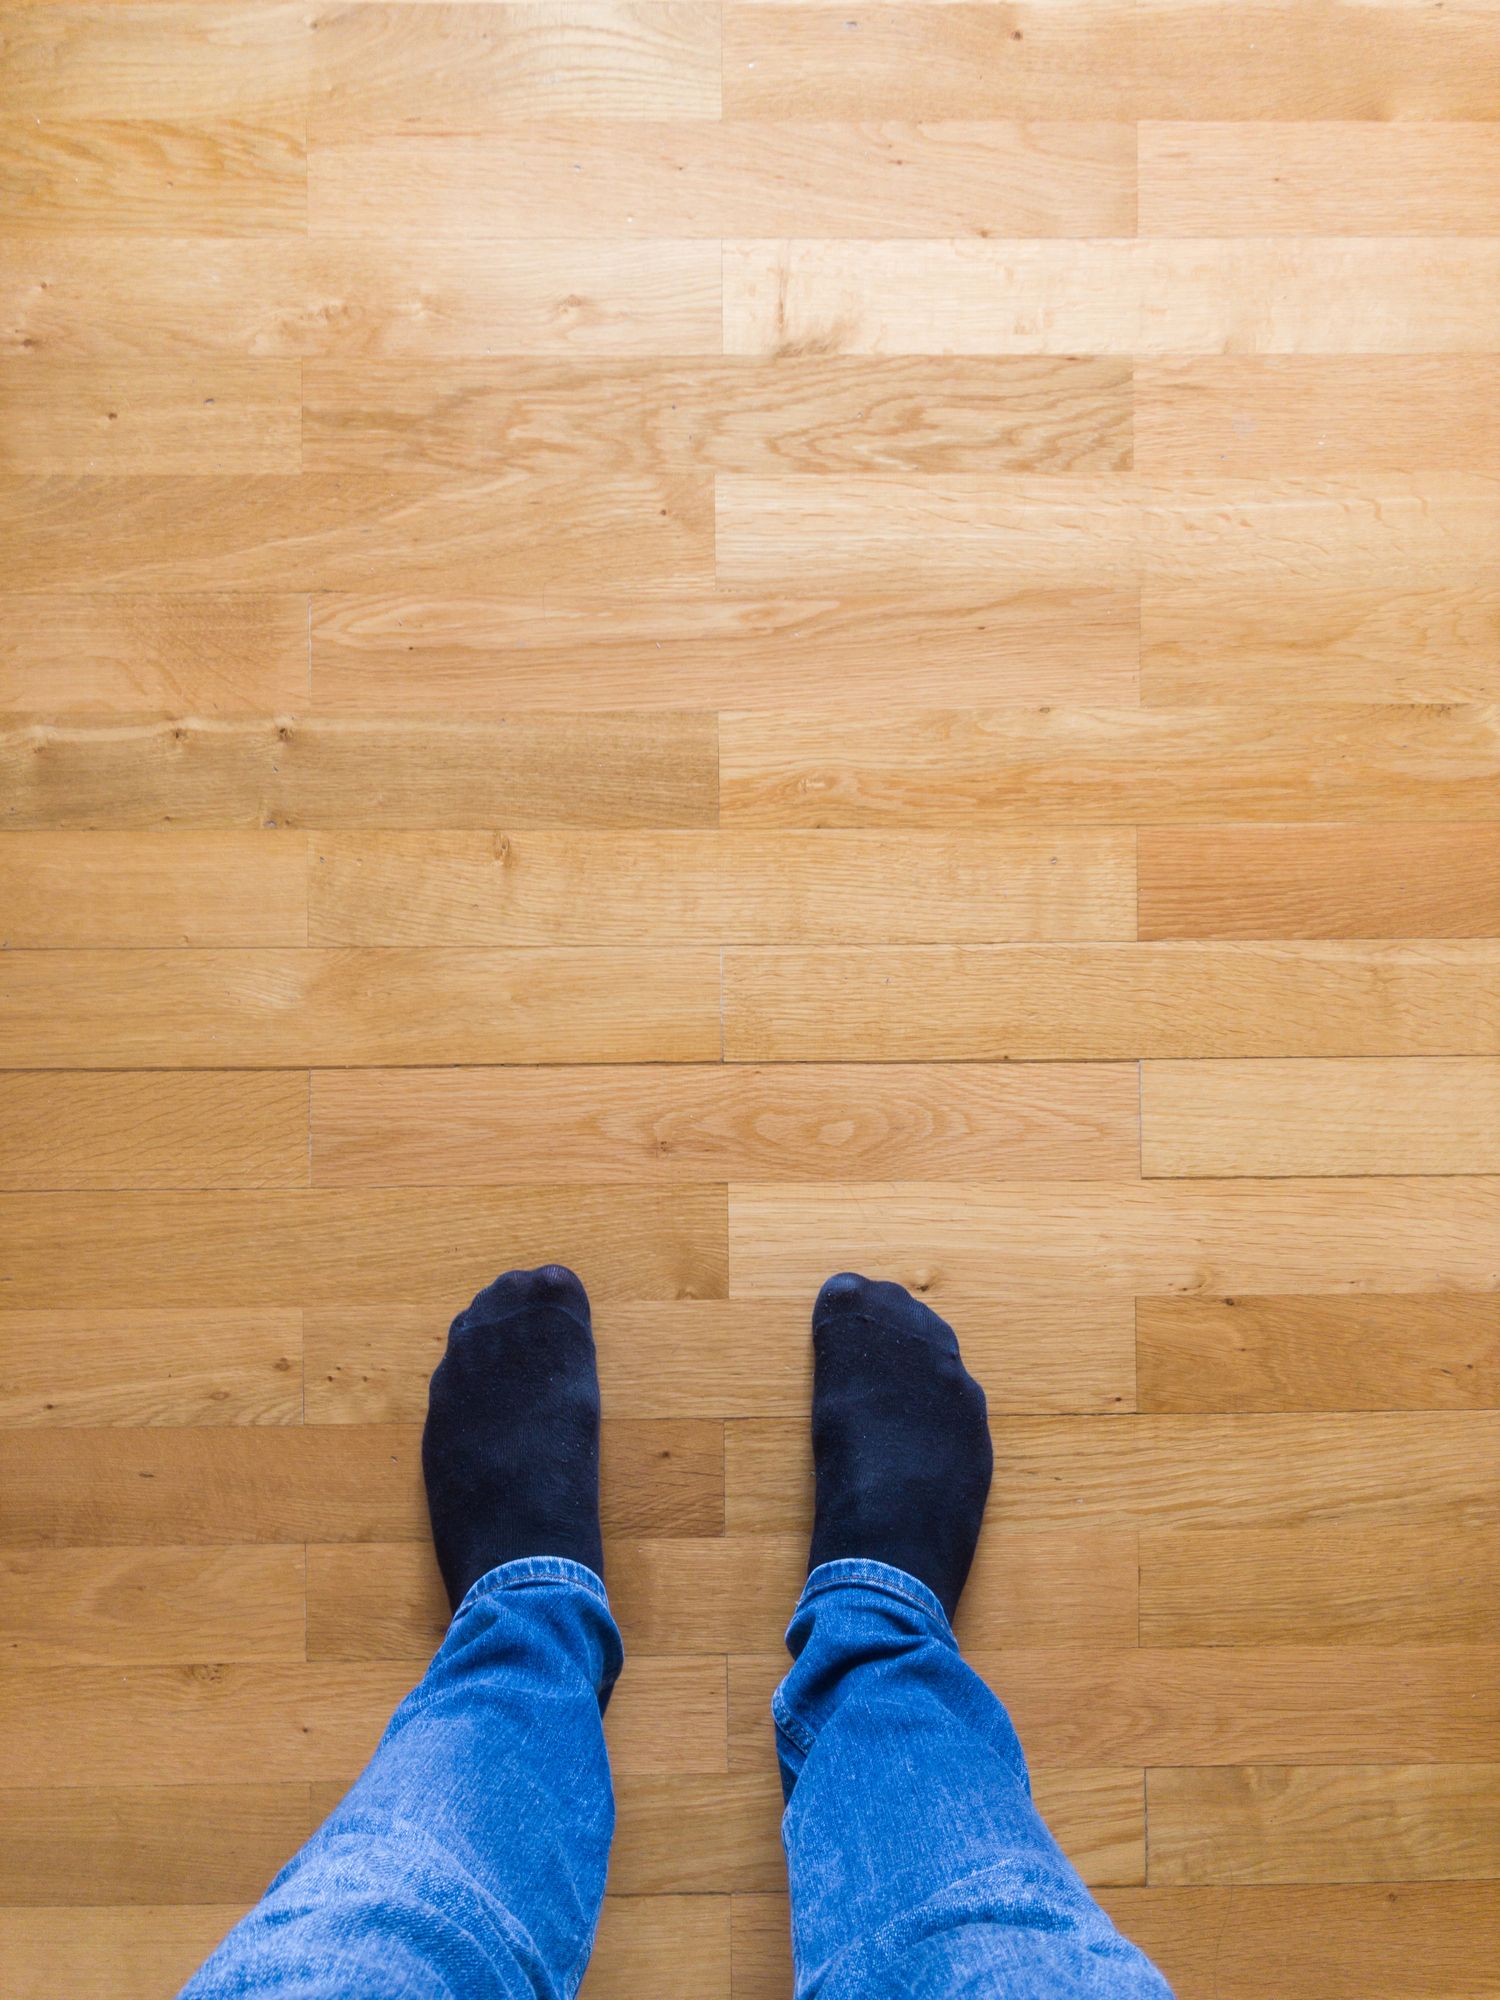 Squeaky Floor Repair, How To Stop Laminate Floors From Squeaking